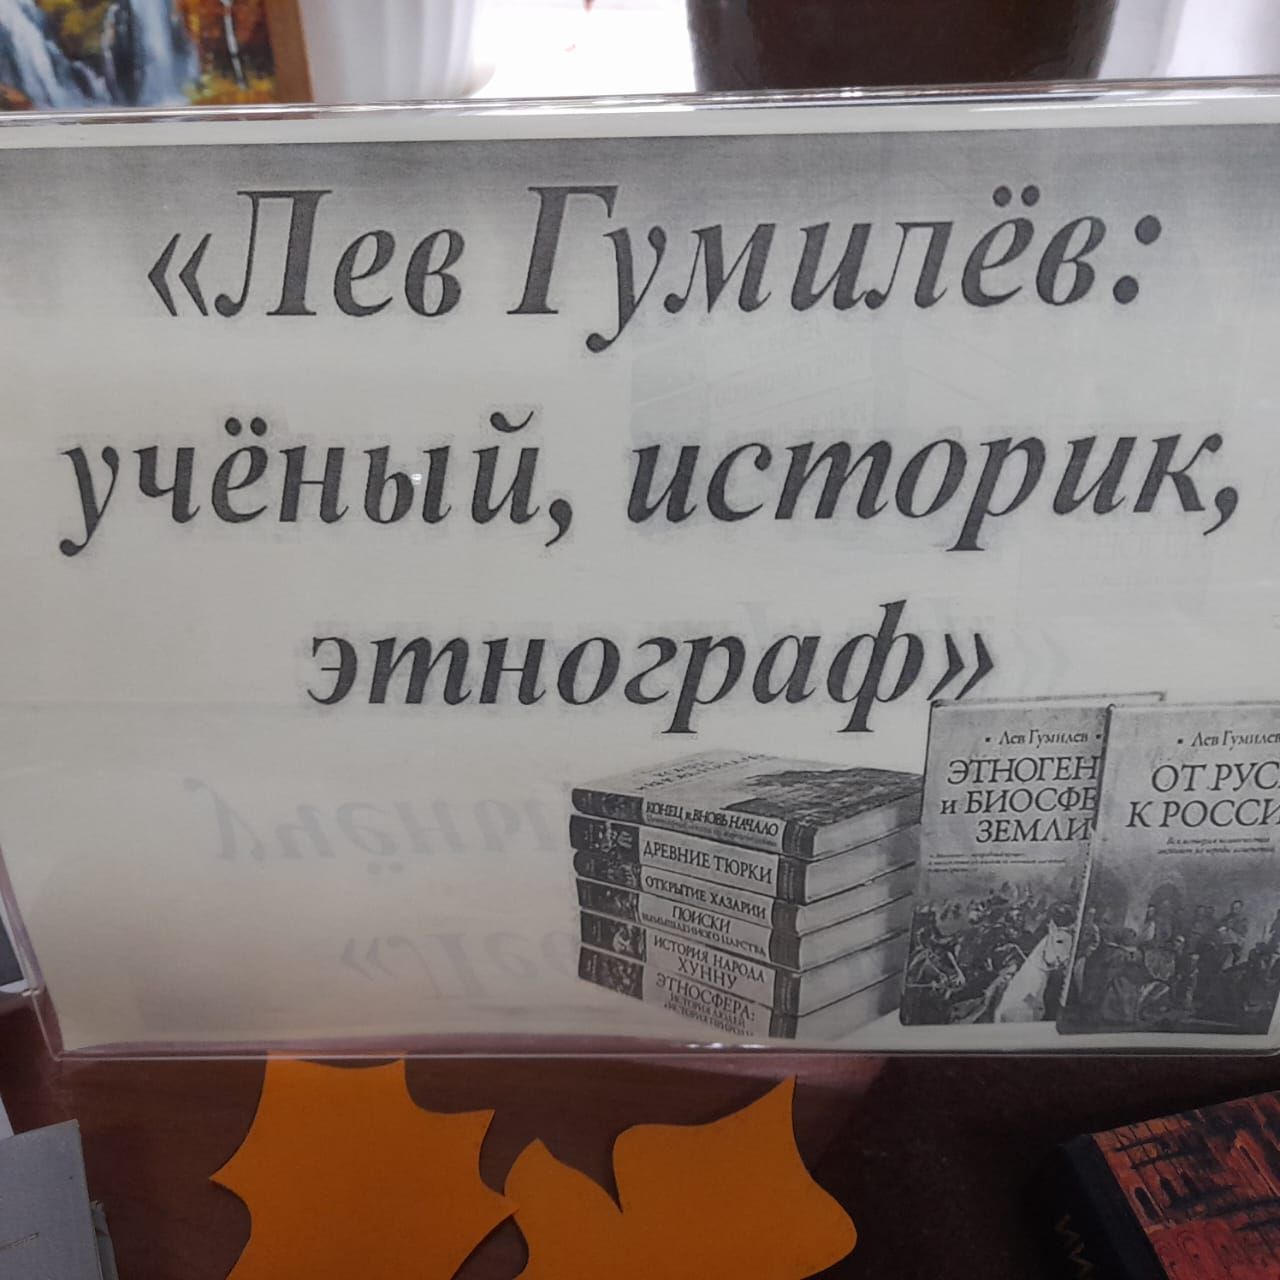 Книжная выставка Лаишевской библиотеки знакомит с выдающимися литераторами Серебряного века